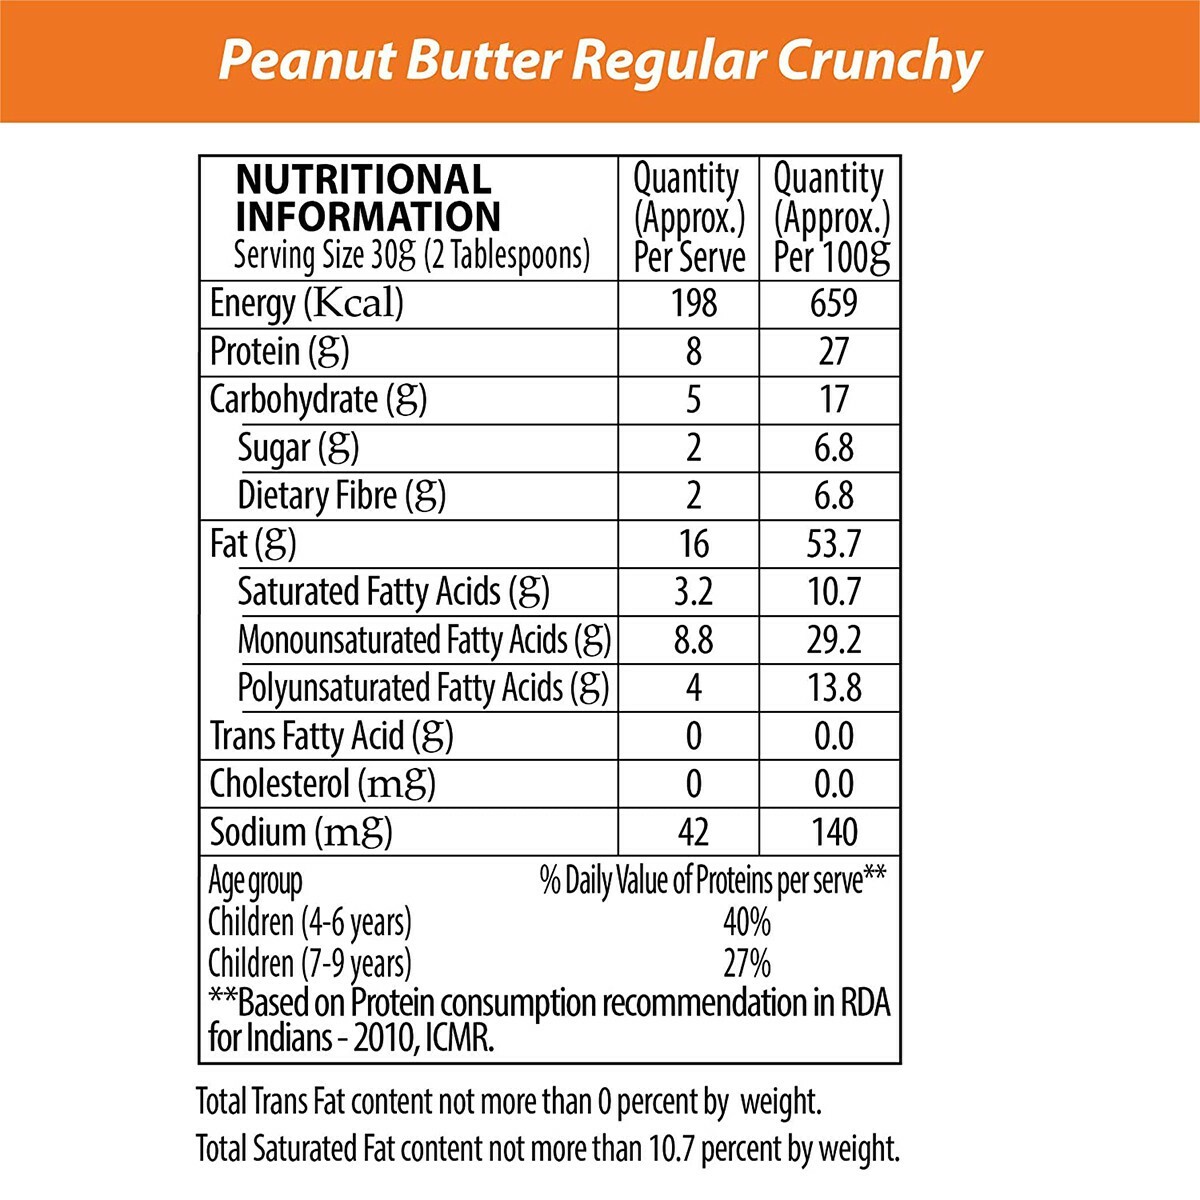 Sundrop Peanut Butter Crunchy 462gm